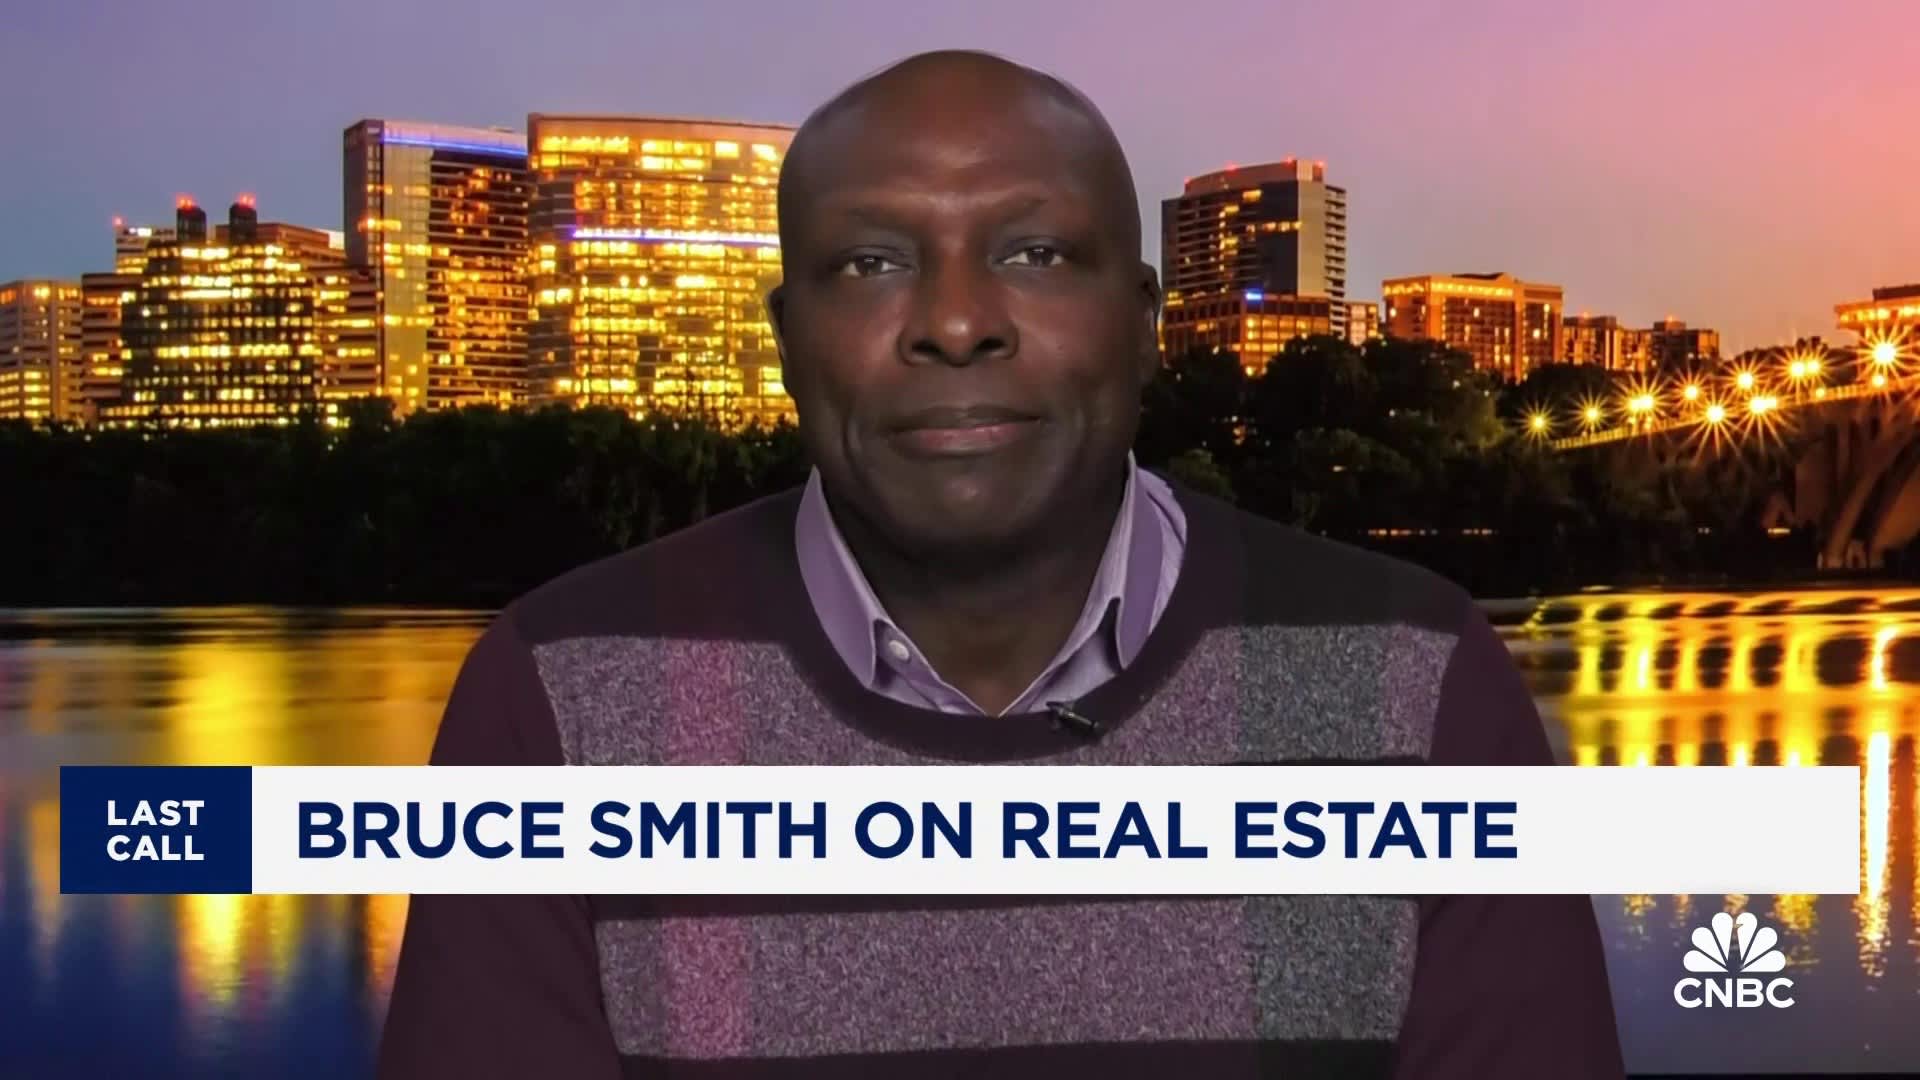 NFL 名人堂成员布鲁斯·史密斯谈论房地产和利率的影响